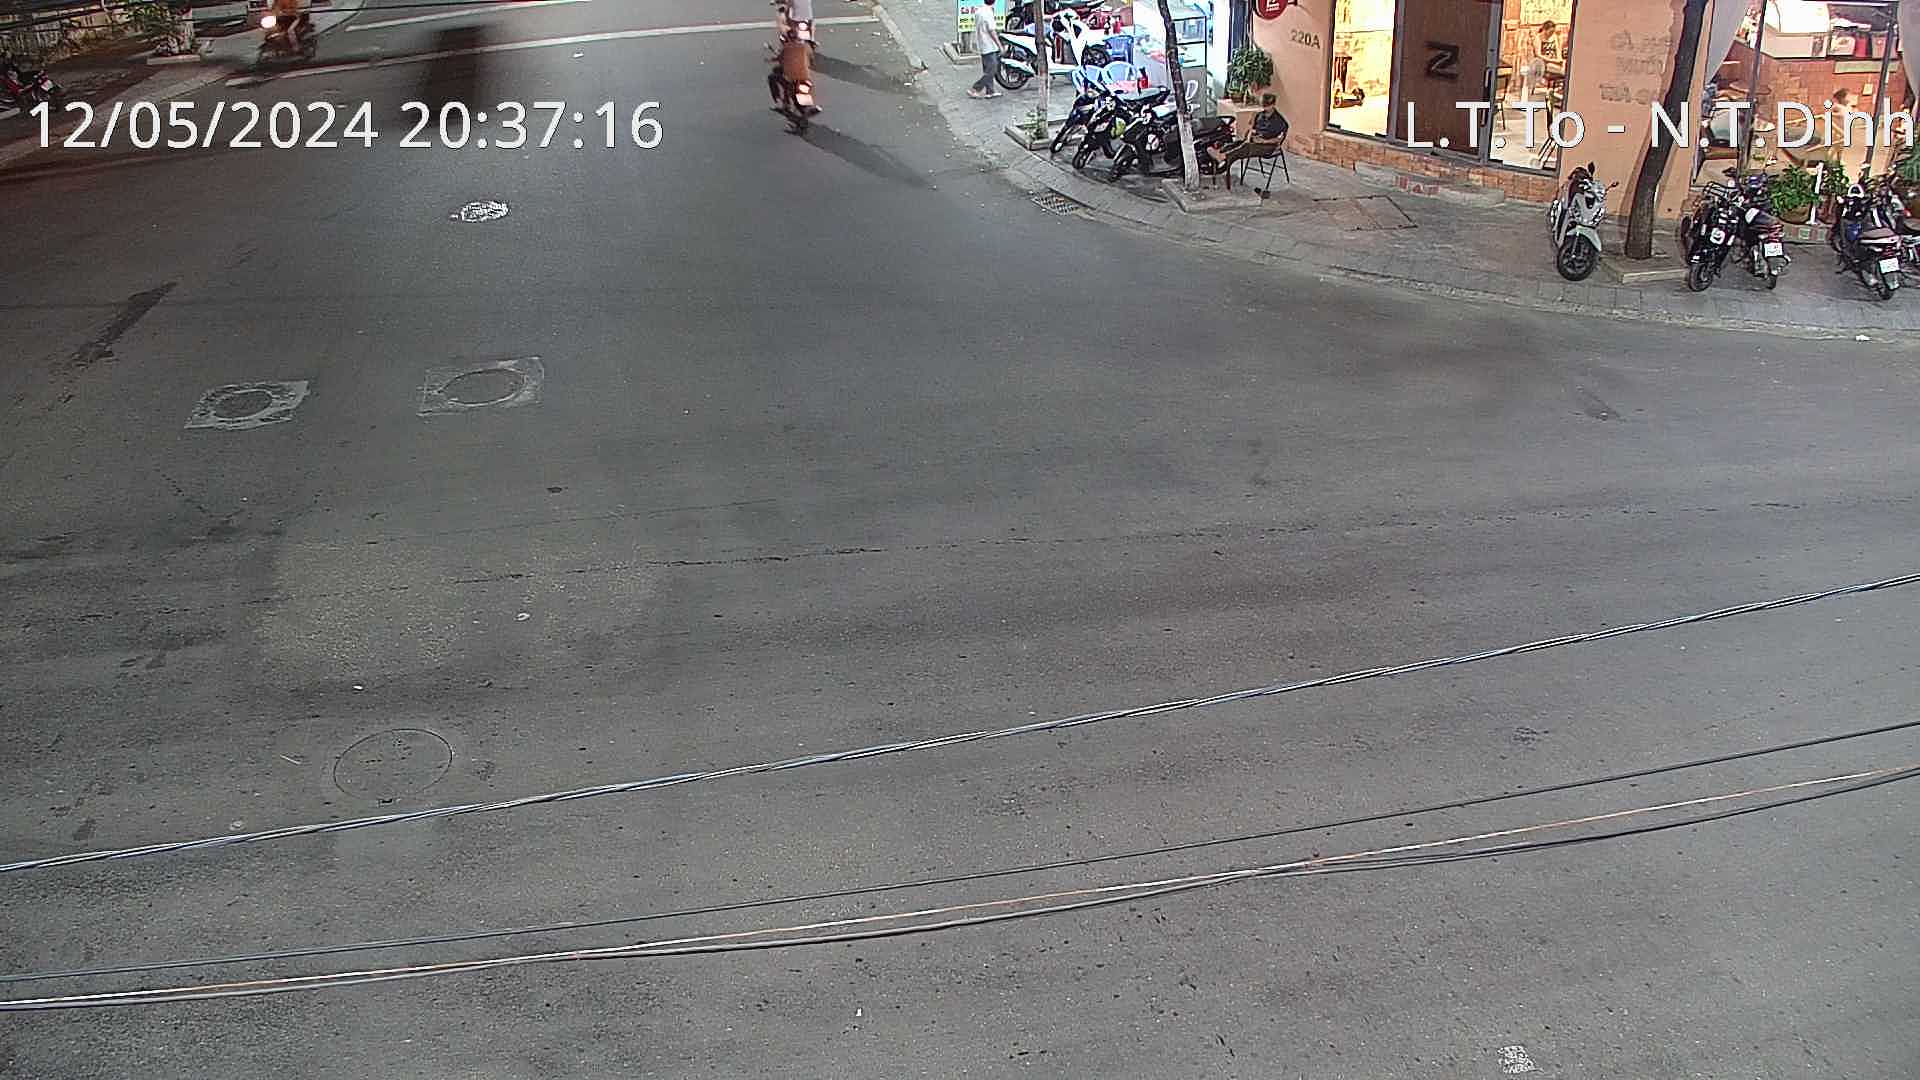 Xem camera giao thông Quy Nhơn Bình Định hình ảnh camera tuyến đường Ngã 4 Lý Thái Tổ - Nguyễn Thị Định